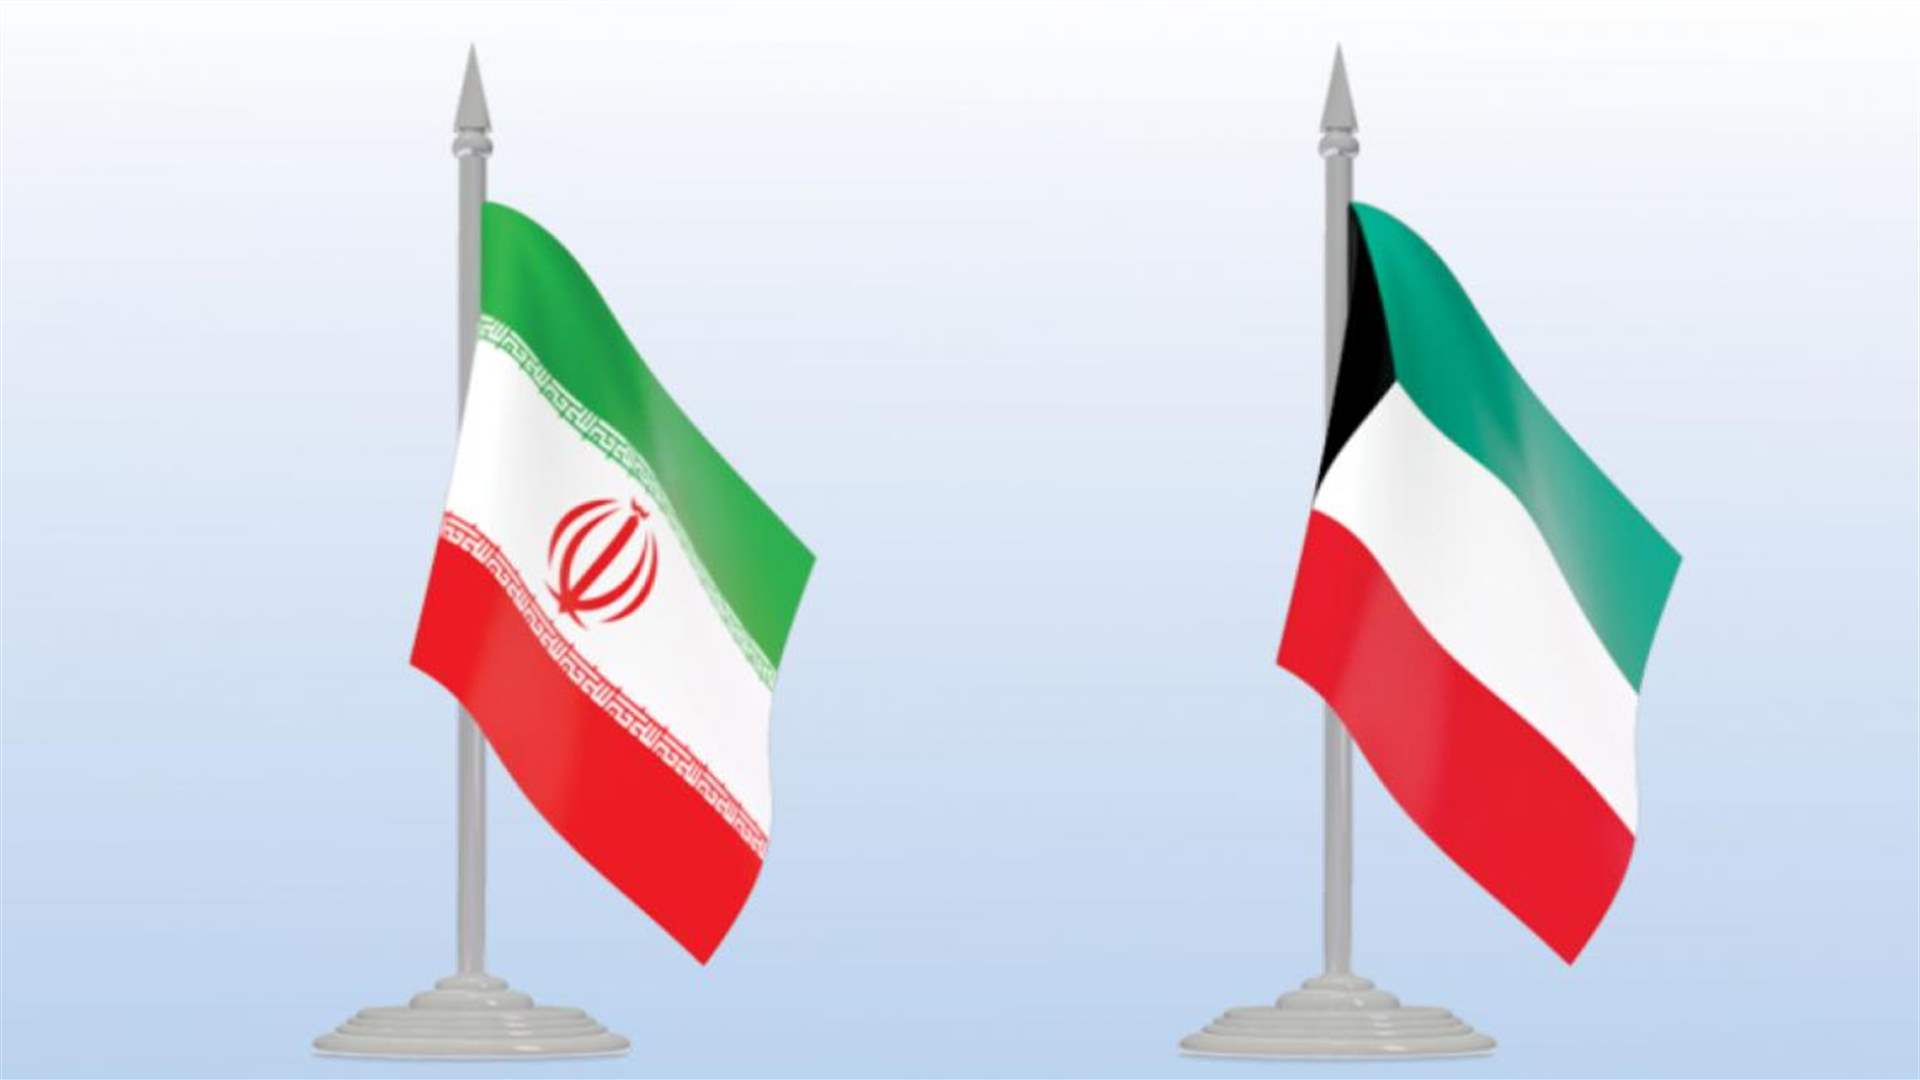 دعوة لوزير خارجية الكويت لزيارة إيران في خضم خلاف حول حقل للغاز